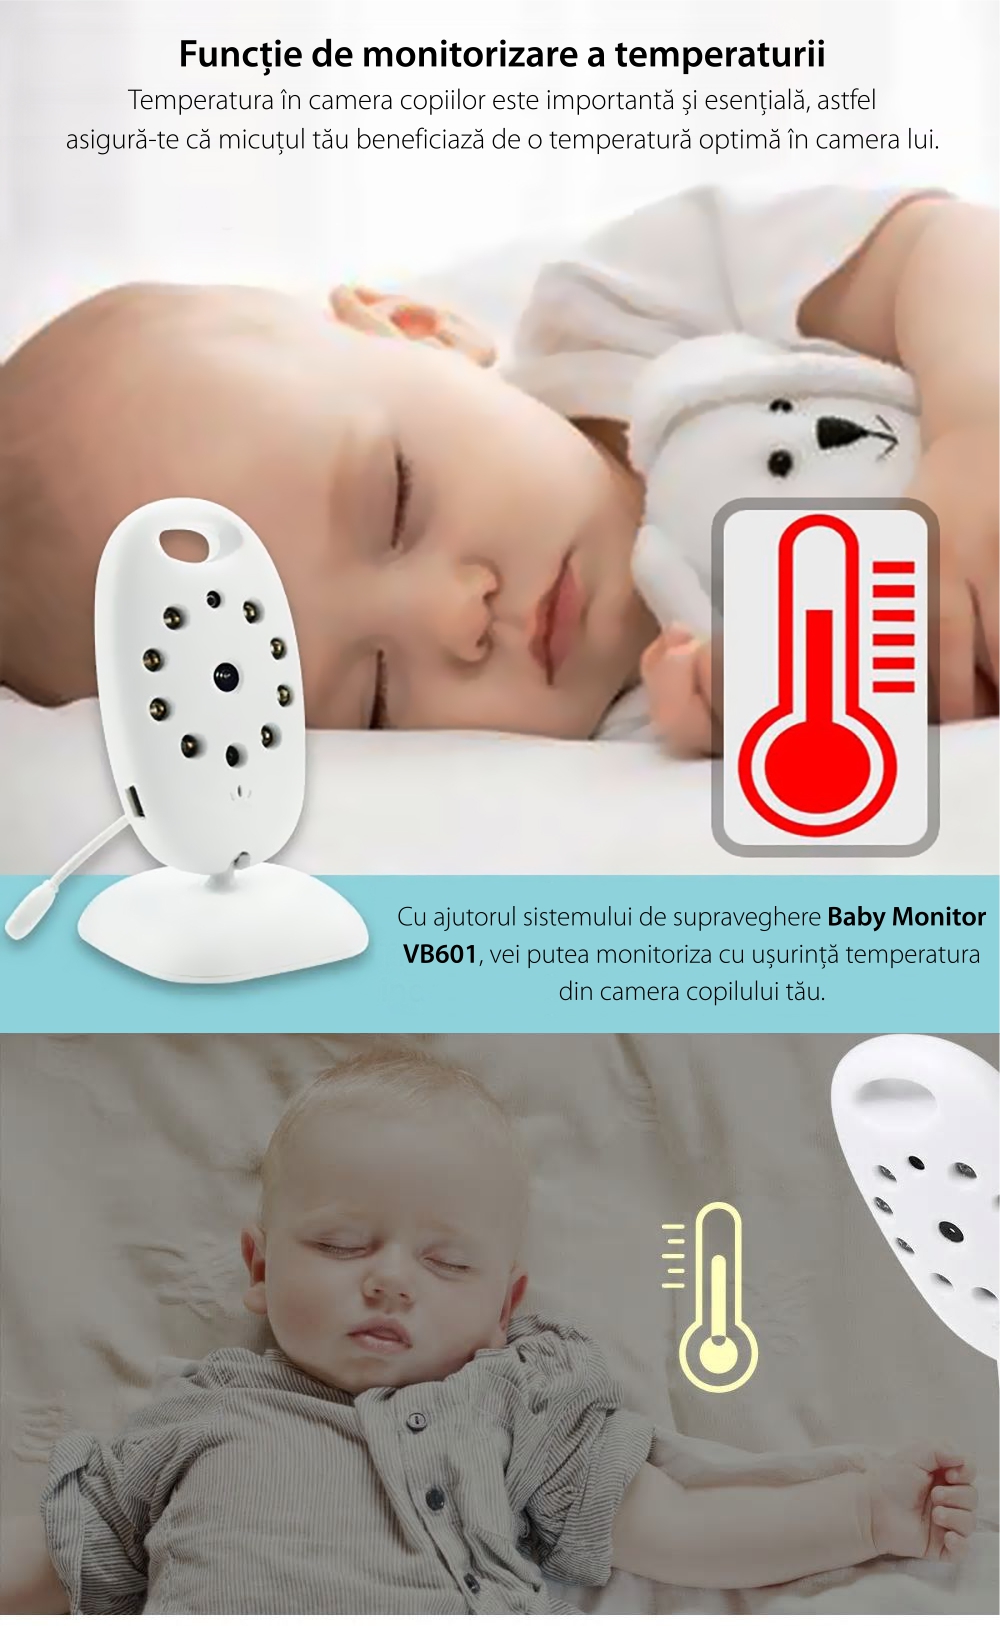 Baby Monitor Wireless VB601, Monitorizare Audio – Video, Monitorizare temperatura, Comunicare bidirectionala, Cantece de leagan, Night Vision, Baterie incorporata